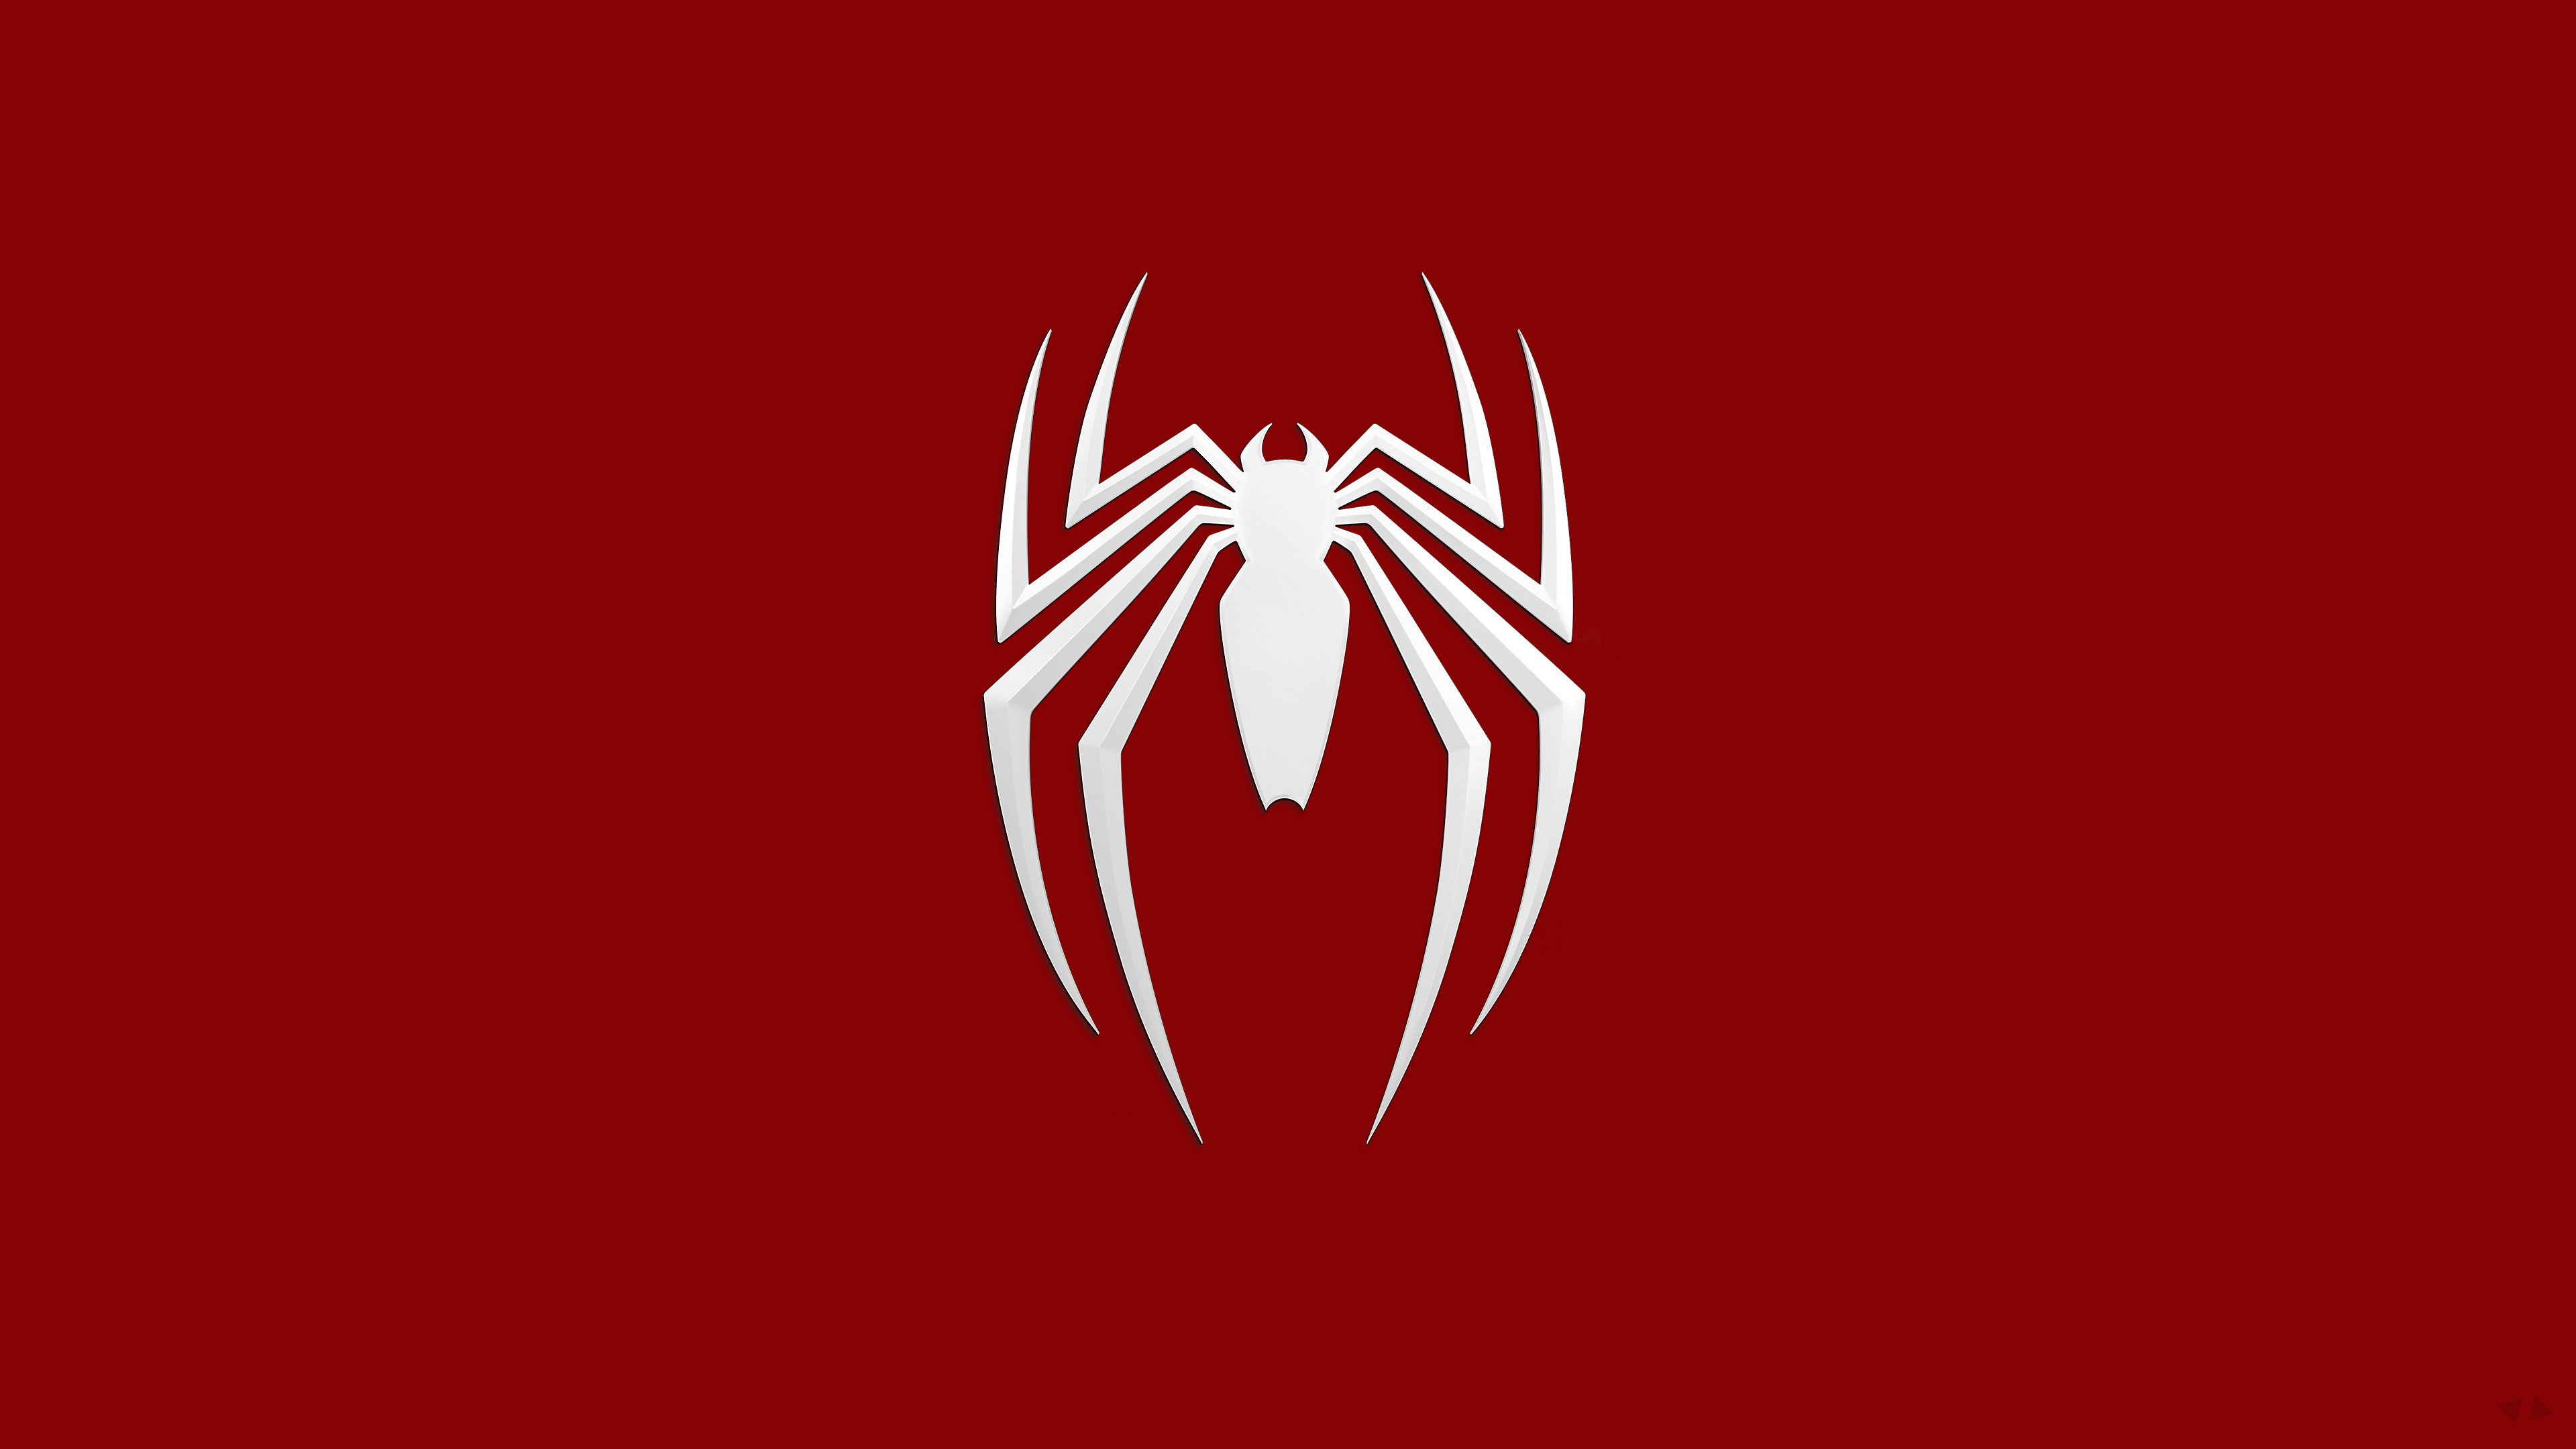 Marvel Spider-Man logo, Spider-Man, logo, simple background, Spider-Man (2018)